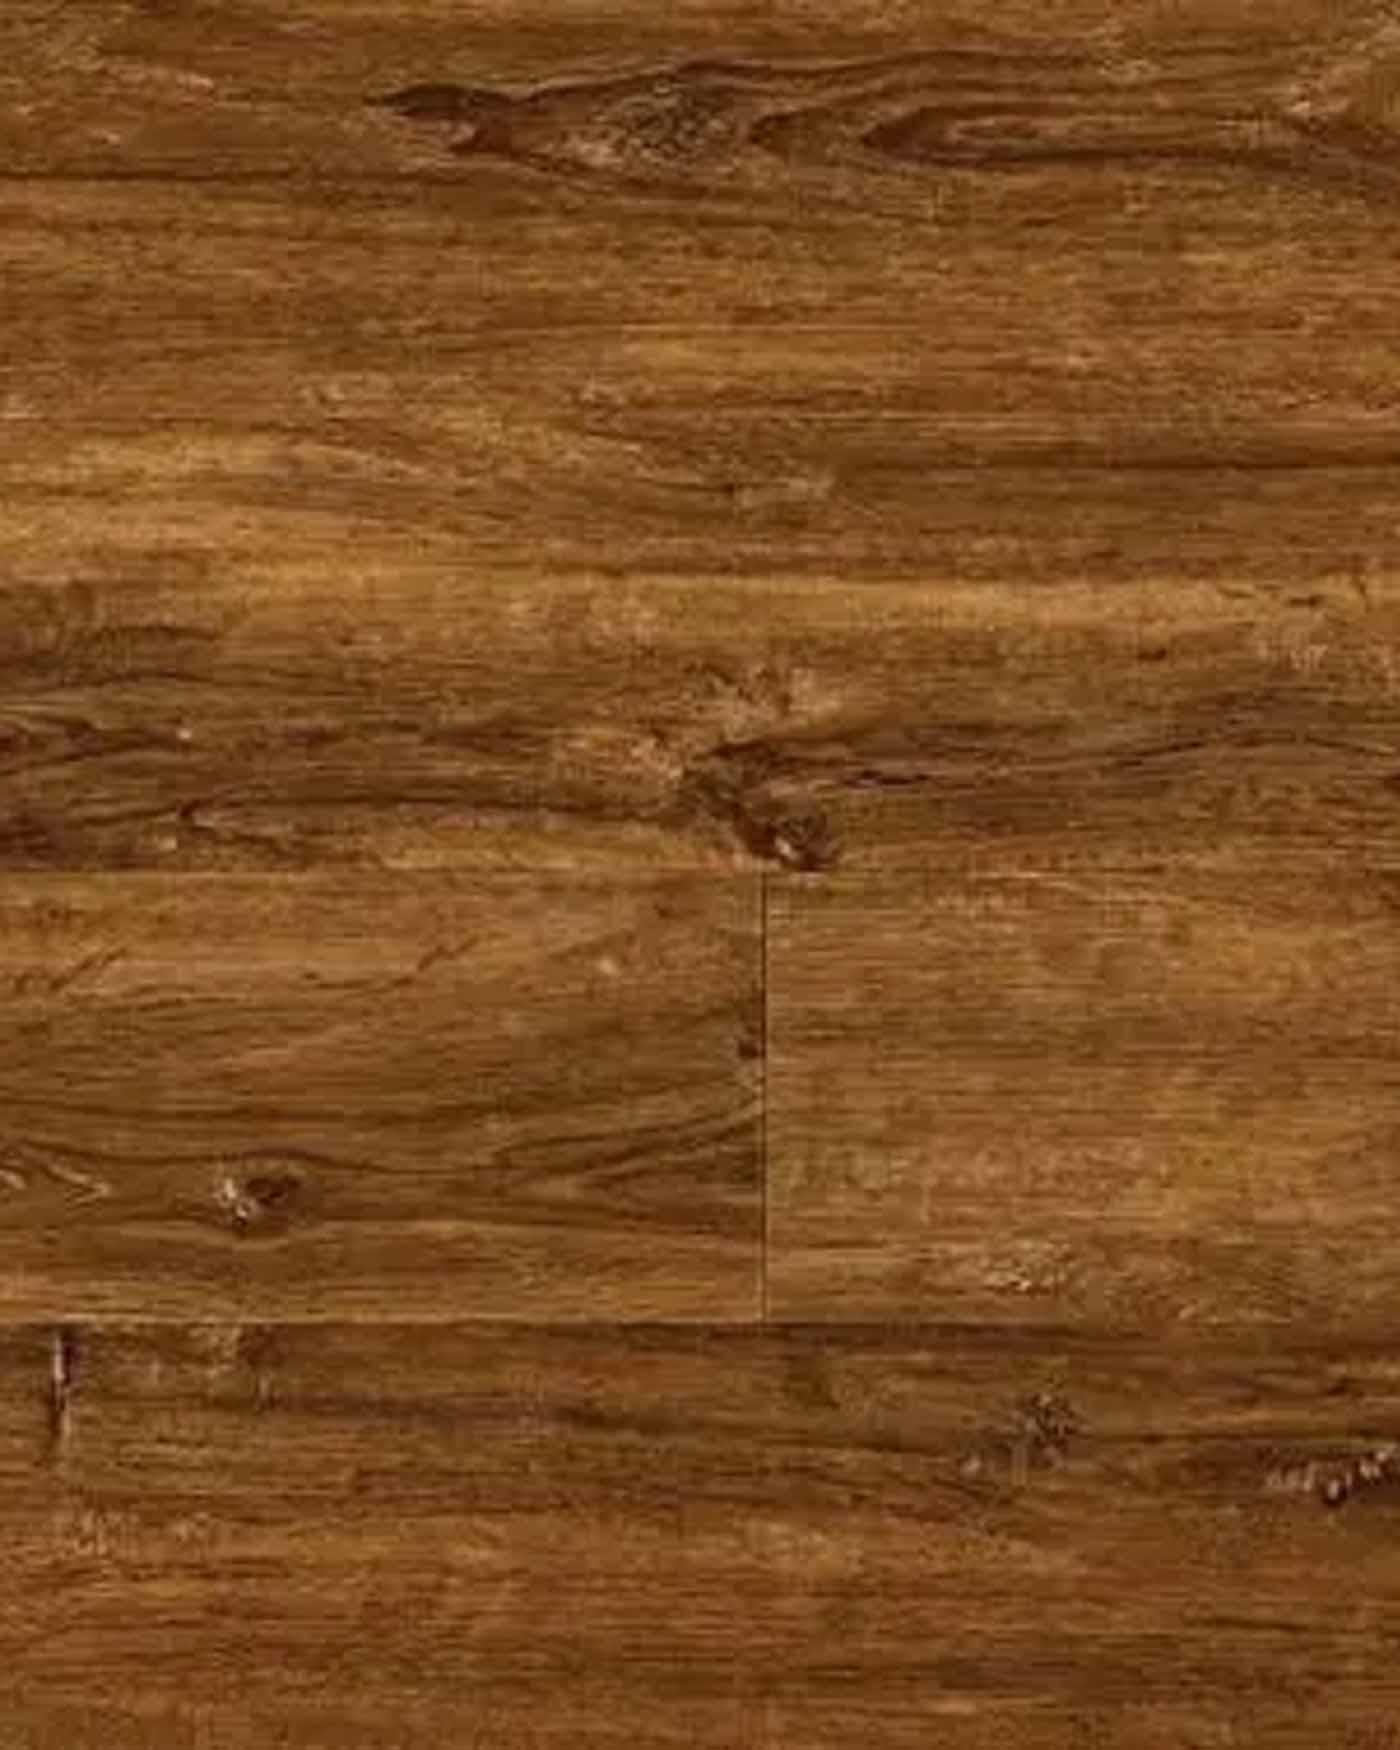 Arden Oak ambiance luxury vinyl flooring warwickshire